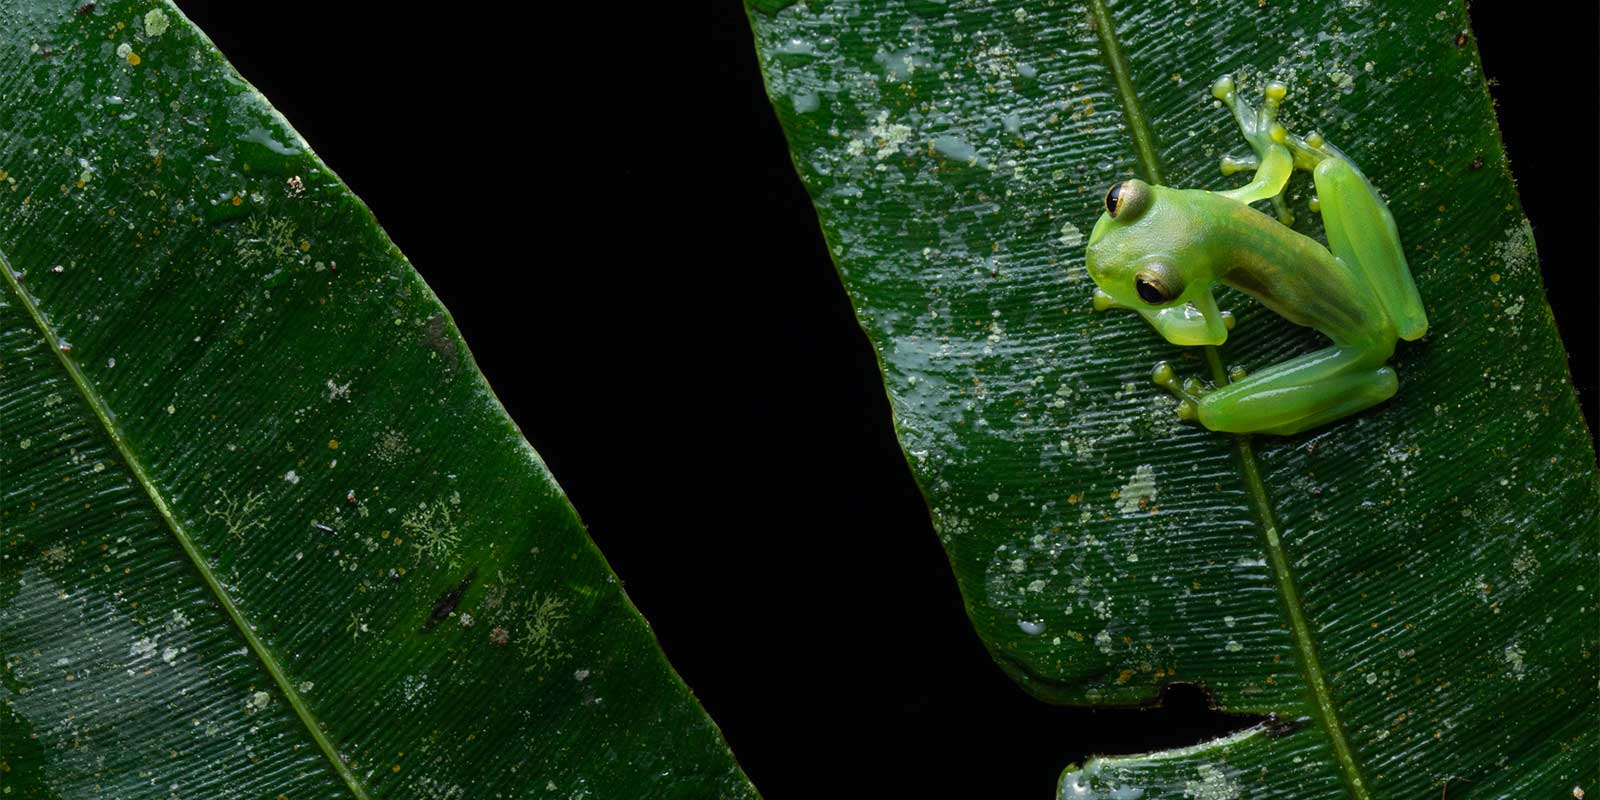 Glass frog in Ecuador